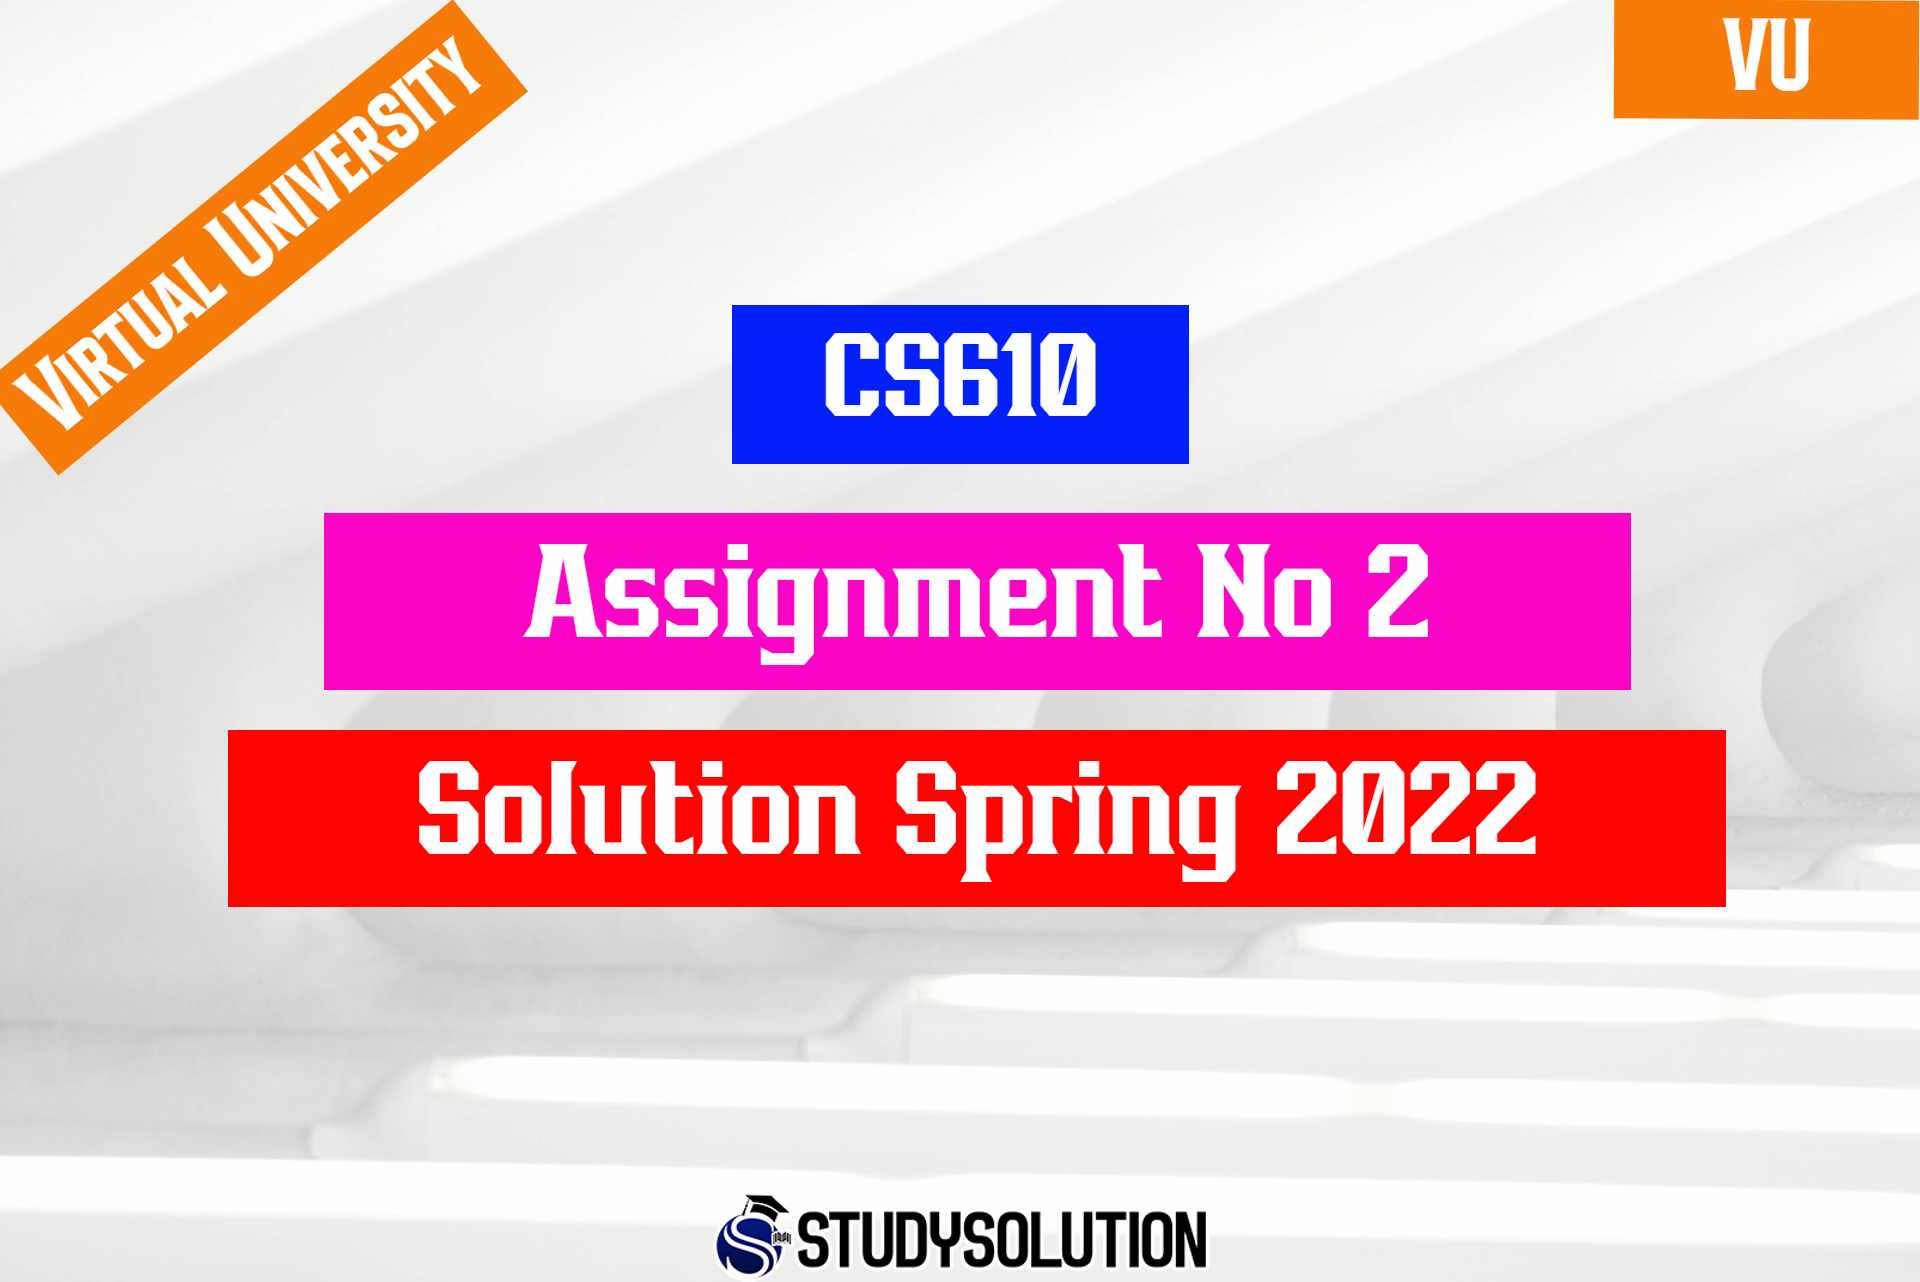 CS610 Assignment No 2 Solution Spring 2022